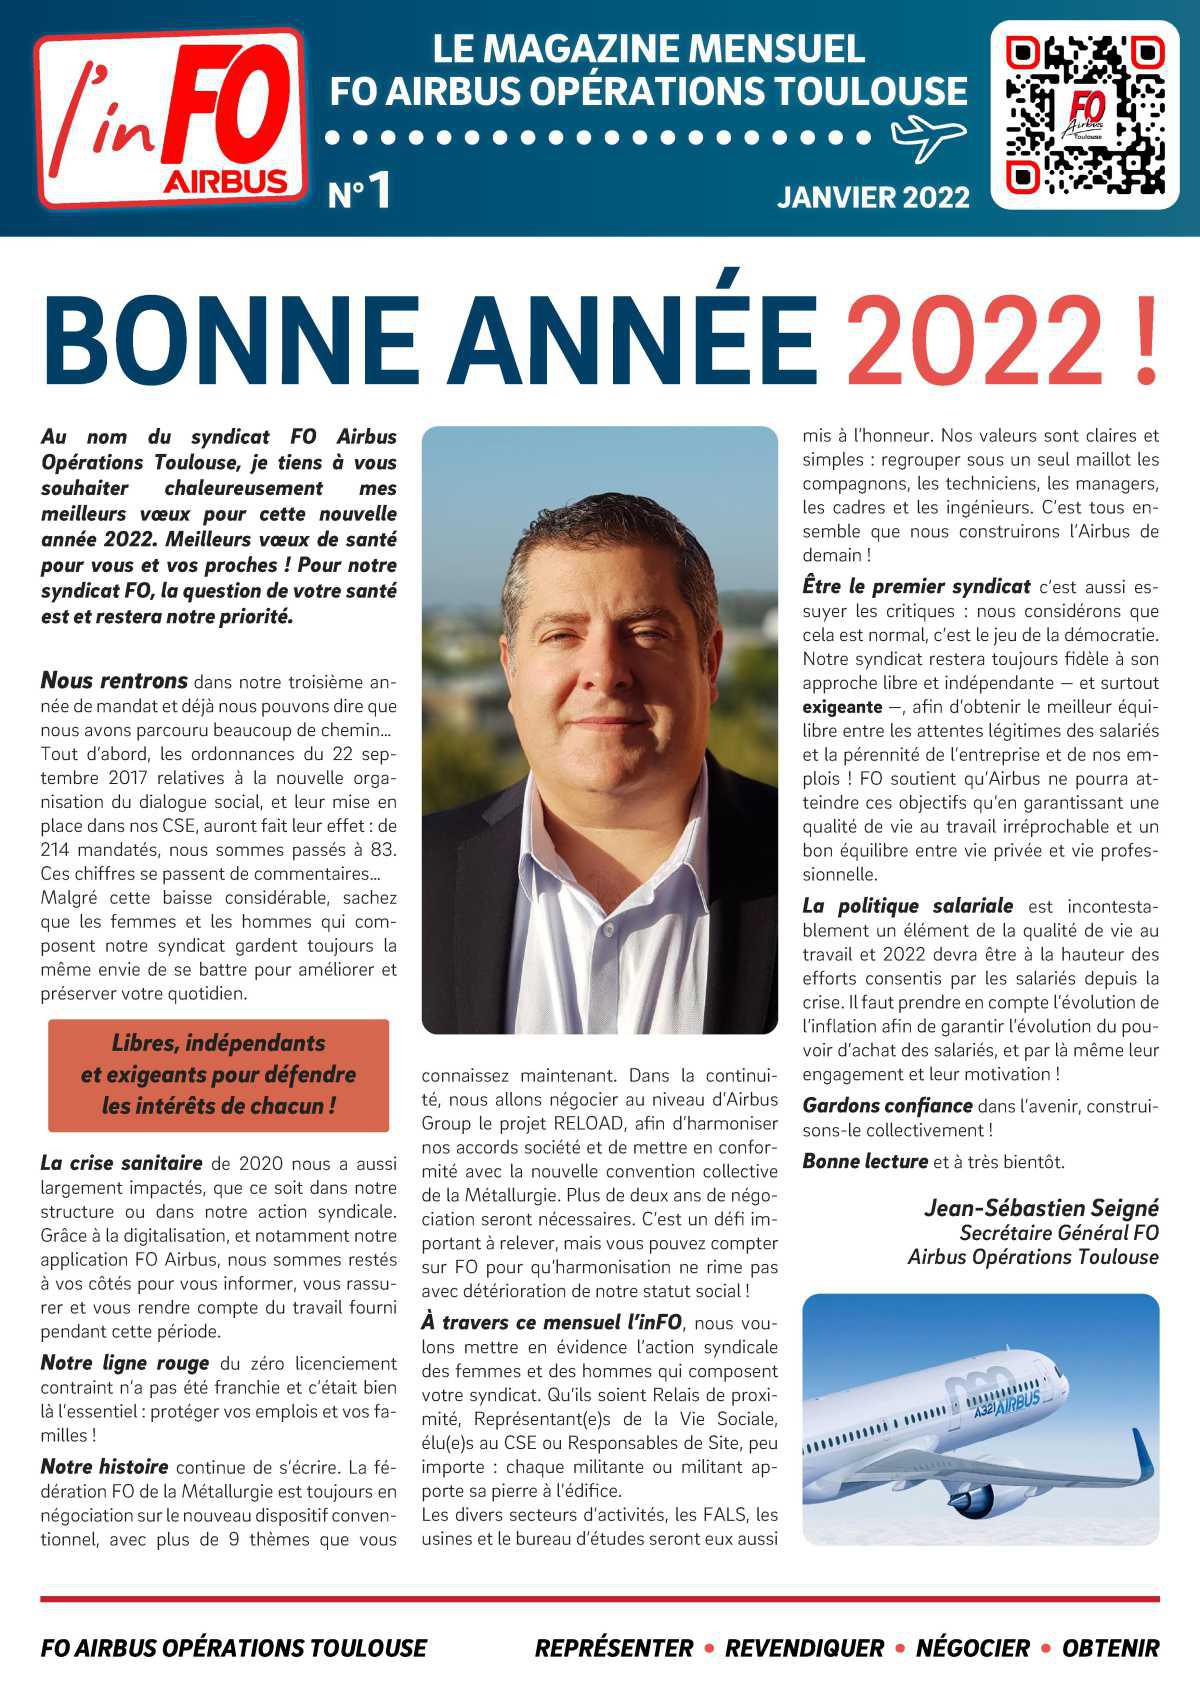 Le magazine mensuel FO Airbus N°1 : Bonne année 2022